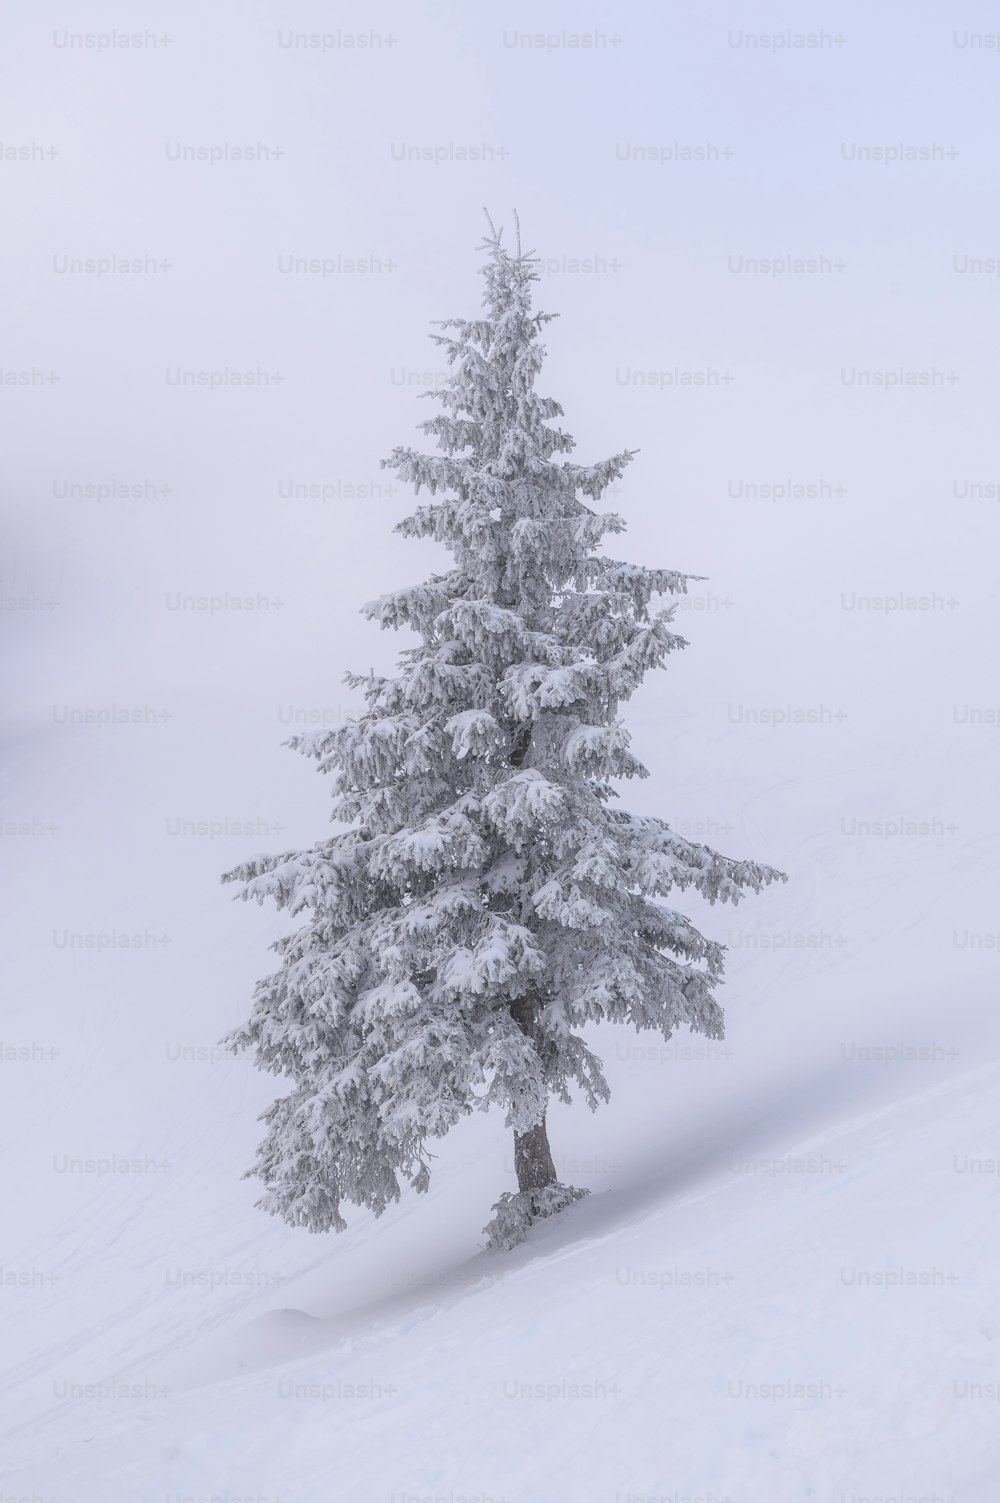 um pinheiro solitário no meio de um campo nevado